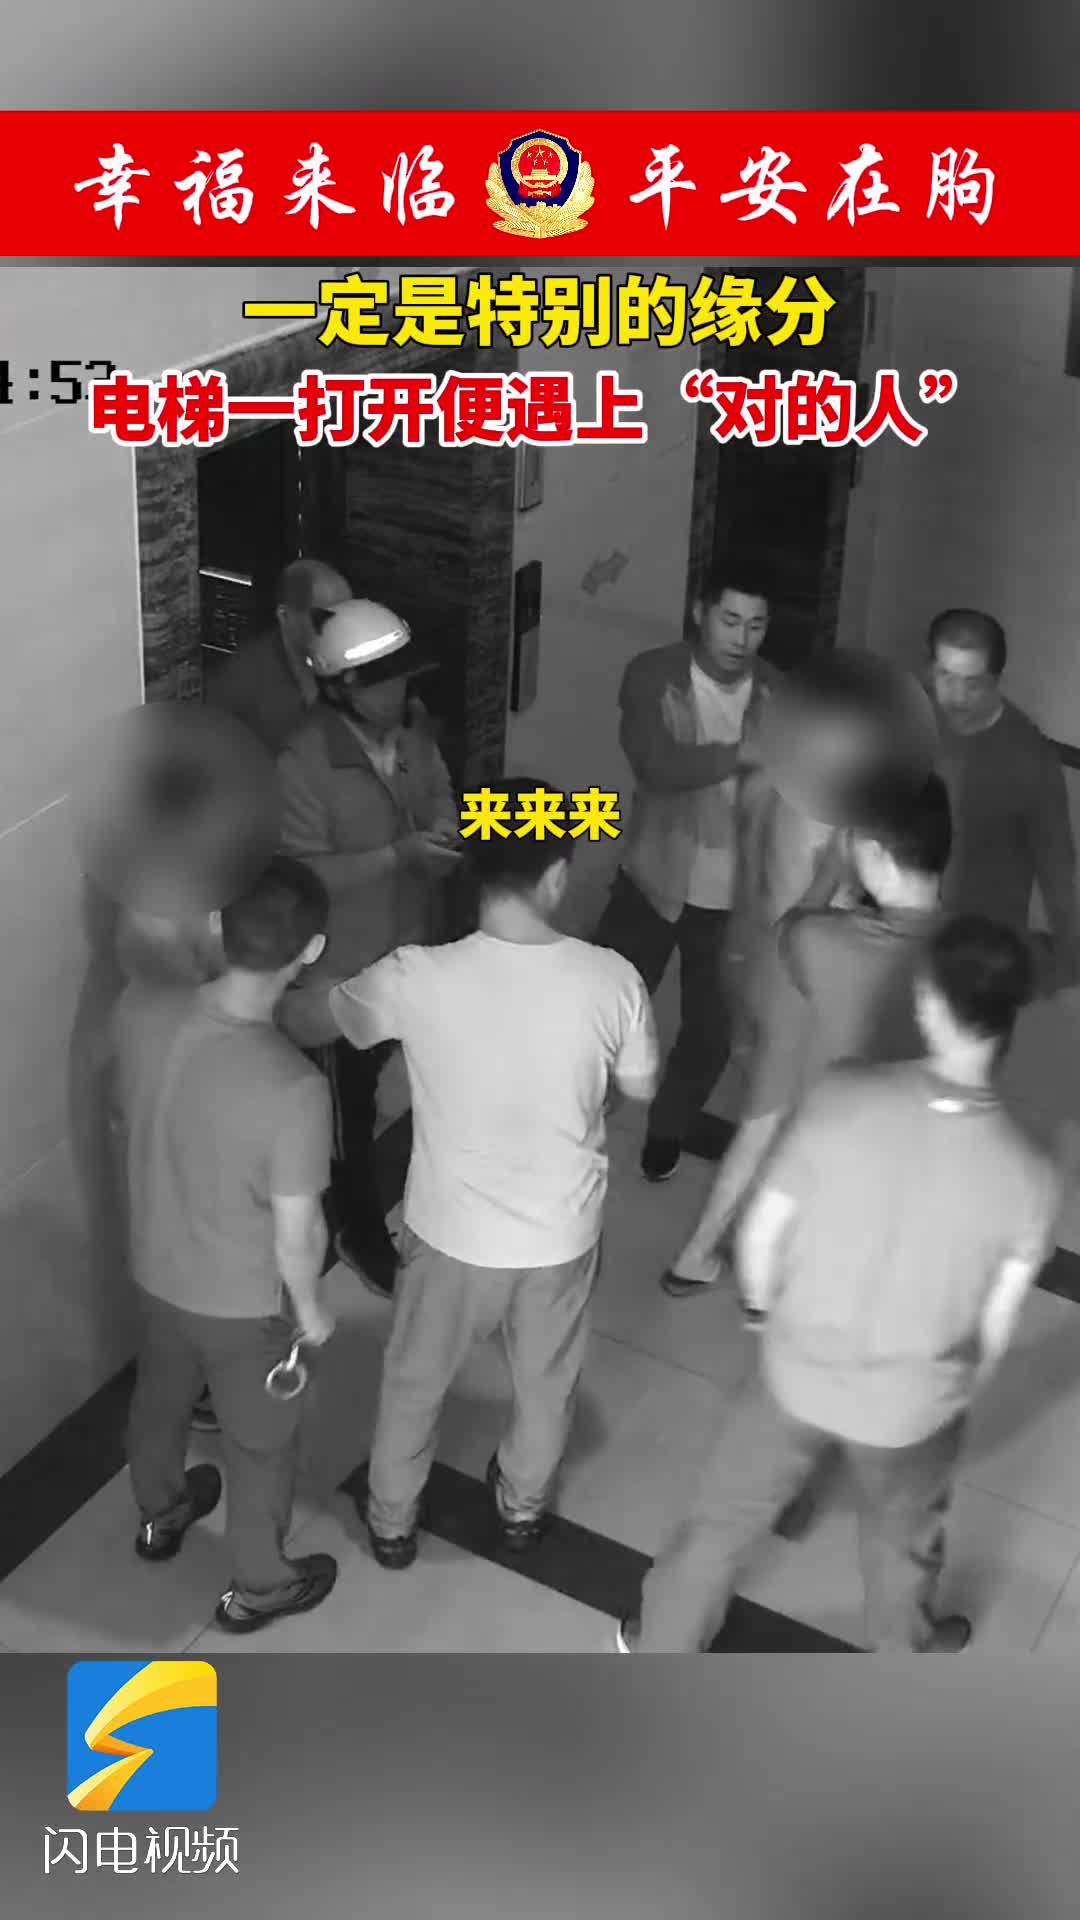 民警与嫌疑人电梯迎面相遇 临朐公安这次抓捕充满“戏剧性”